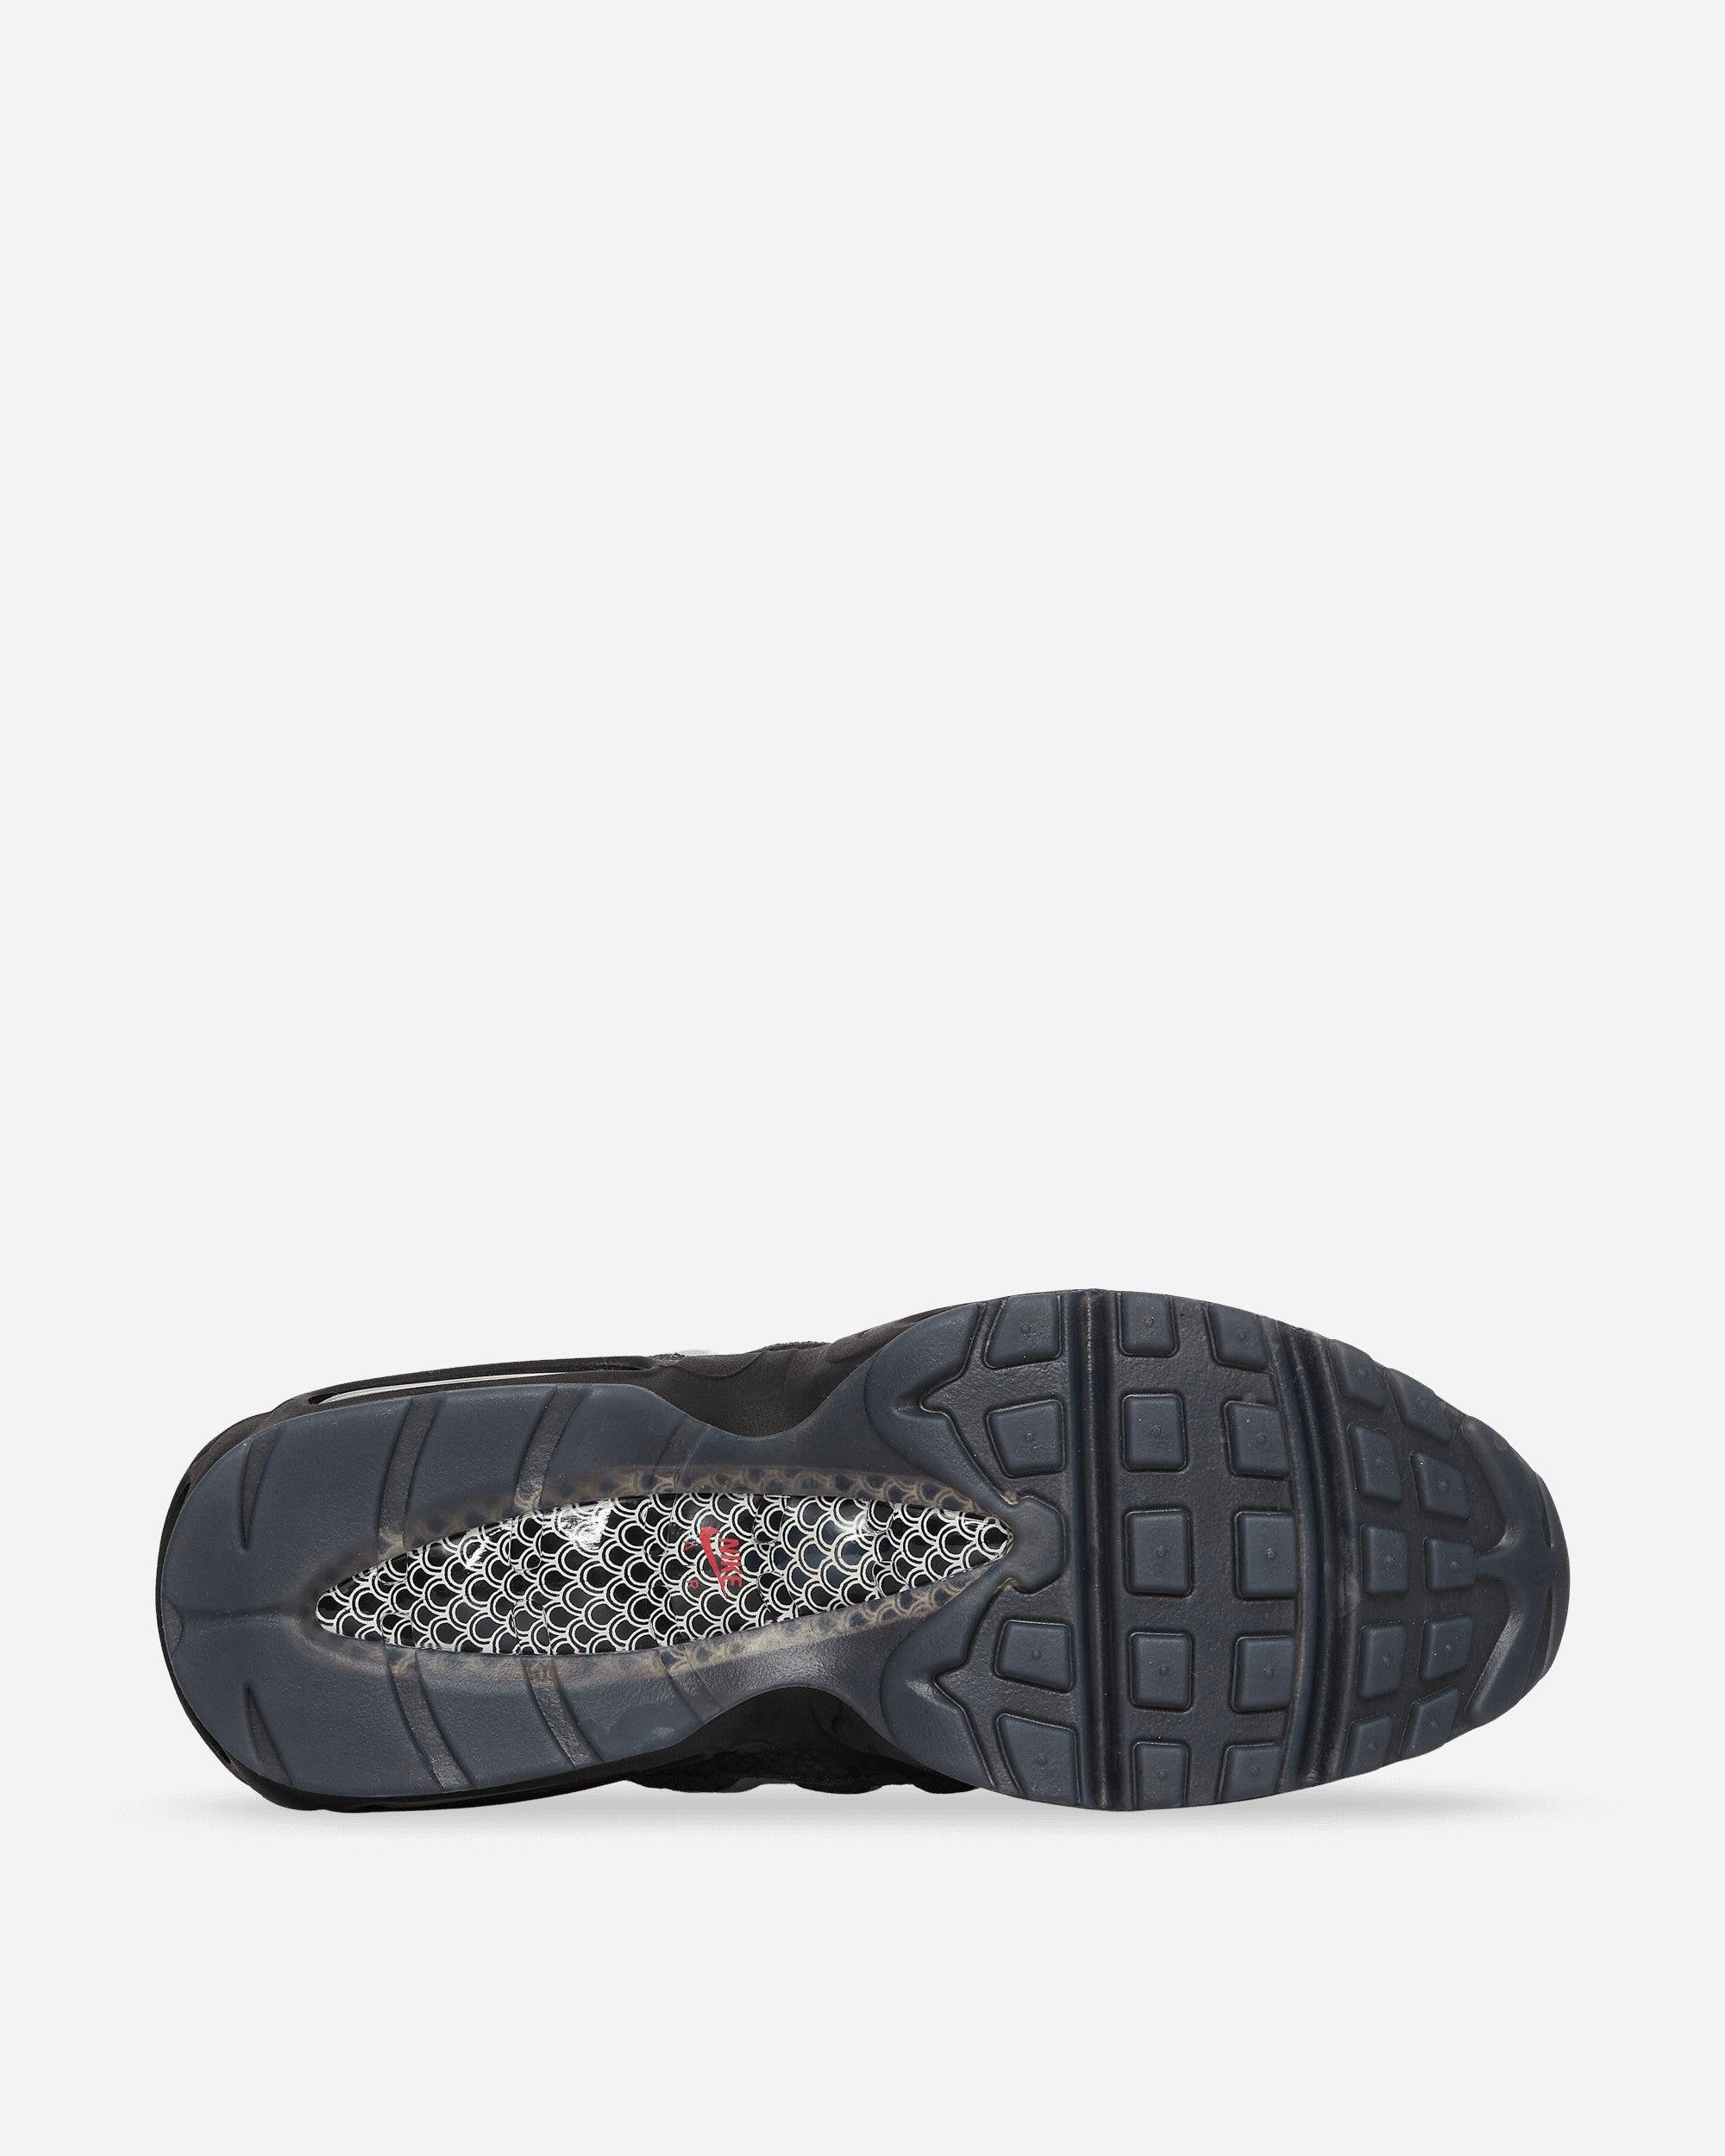 Nike Air Max 95 Premium Sneakers Black / White for Men | Lyst